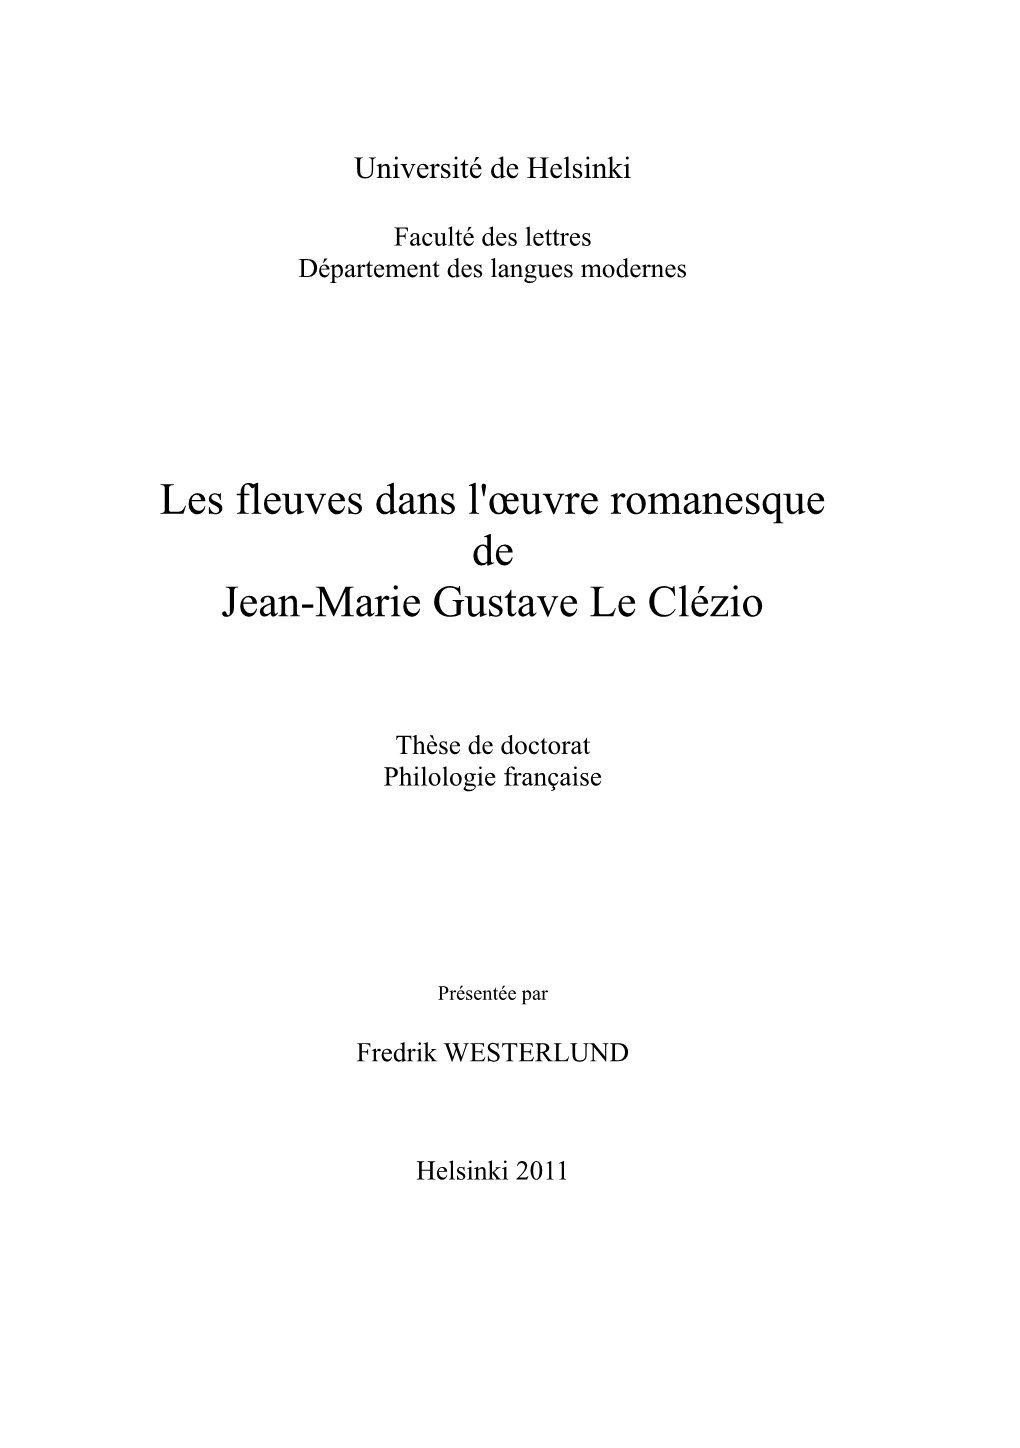 Les Fleuves Dans L' Uvre Romanesque De Jean-Marie Gustave Le Clézio